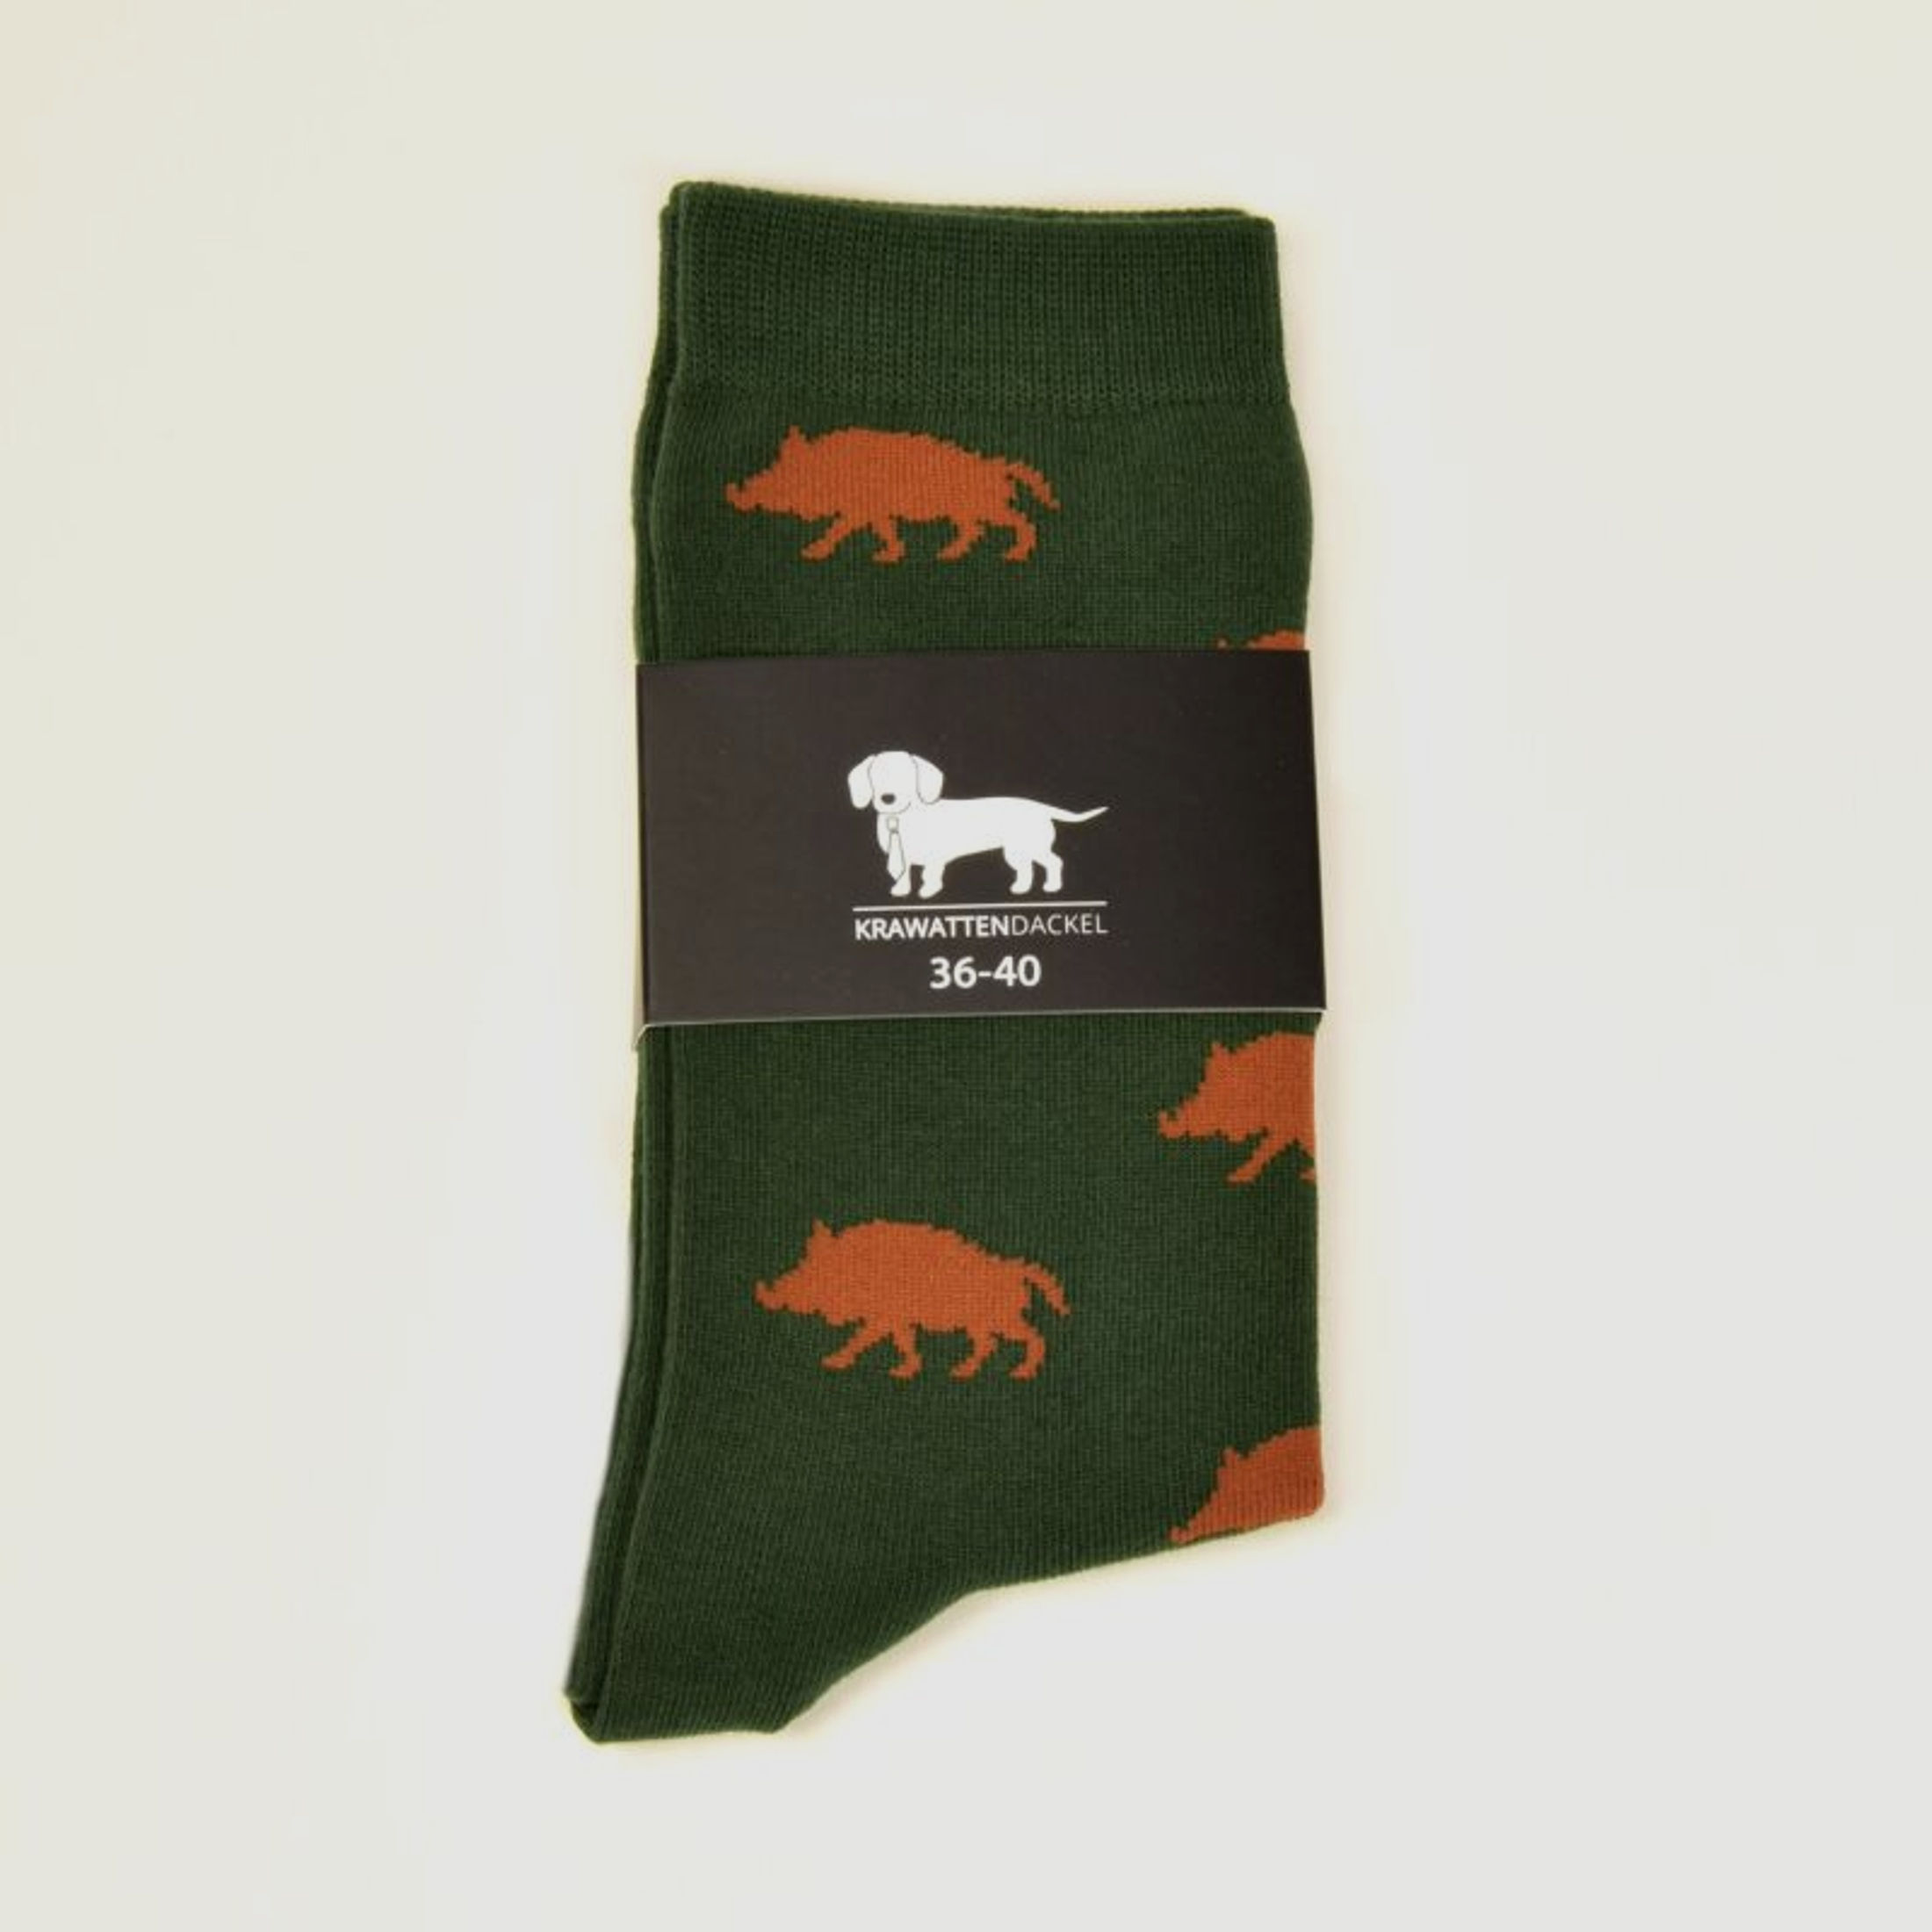 Krawattendackel Unisex Socken grün, Wildschwein braun